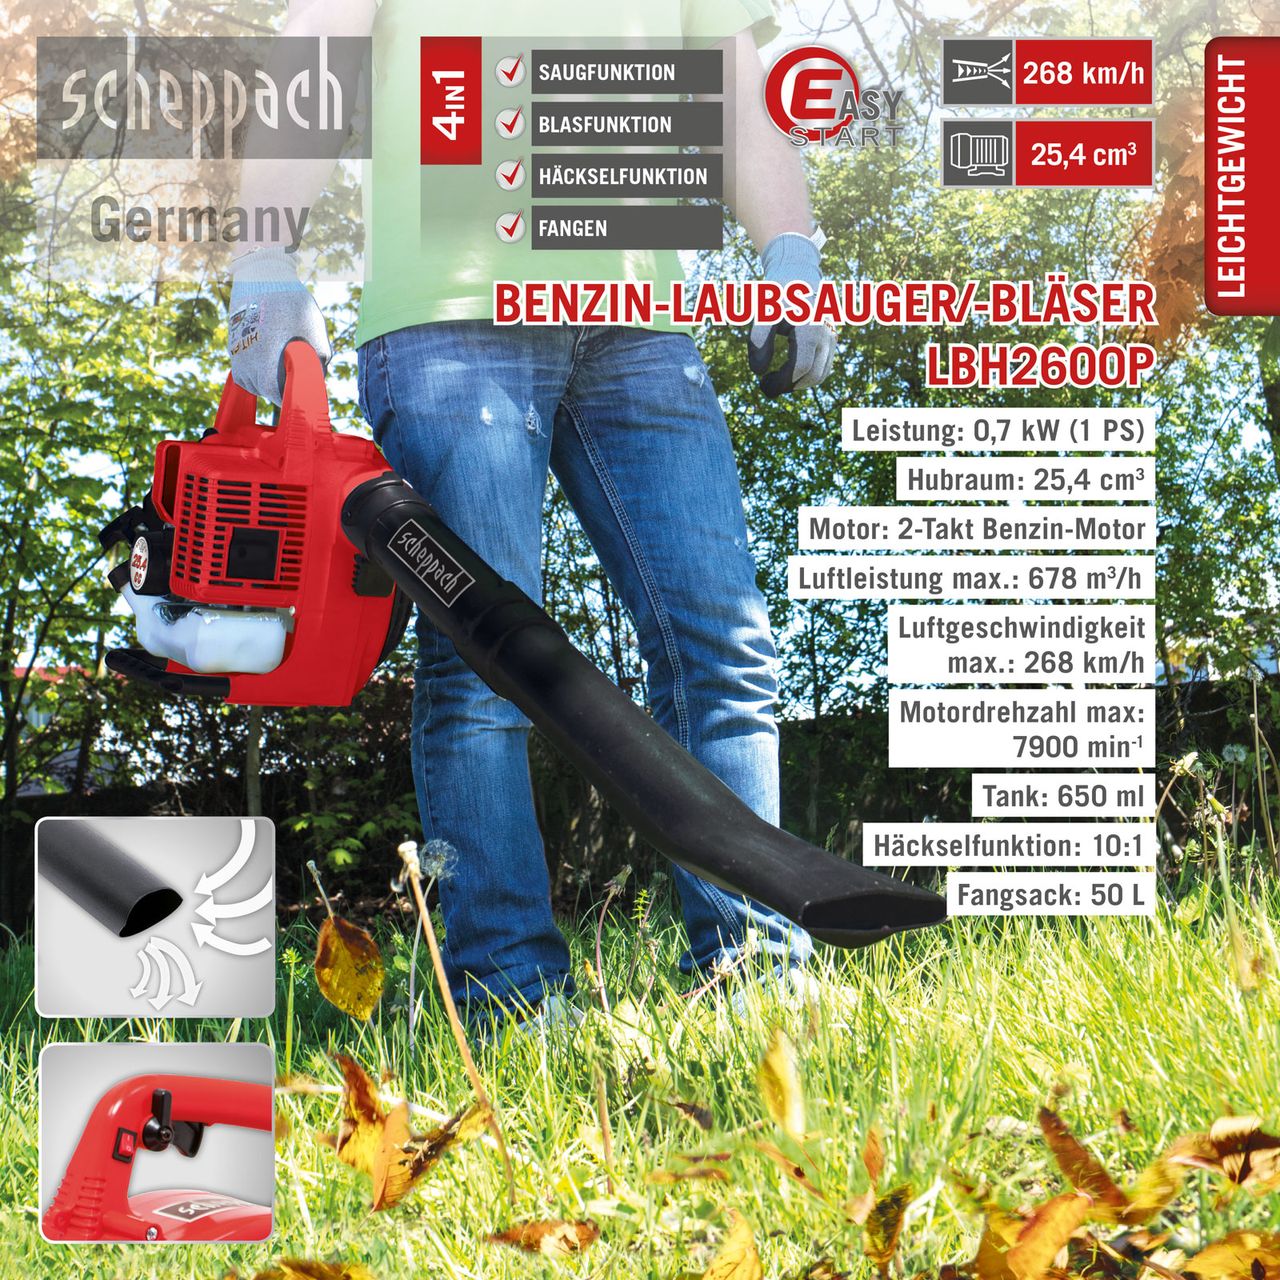  Scheppach Germany: Laubsauger / Laubbläser